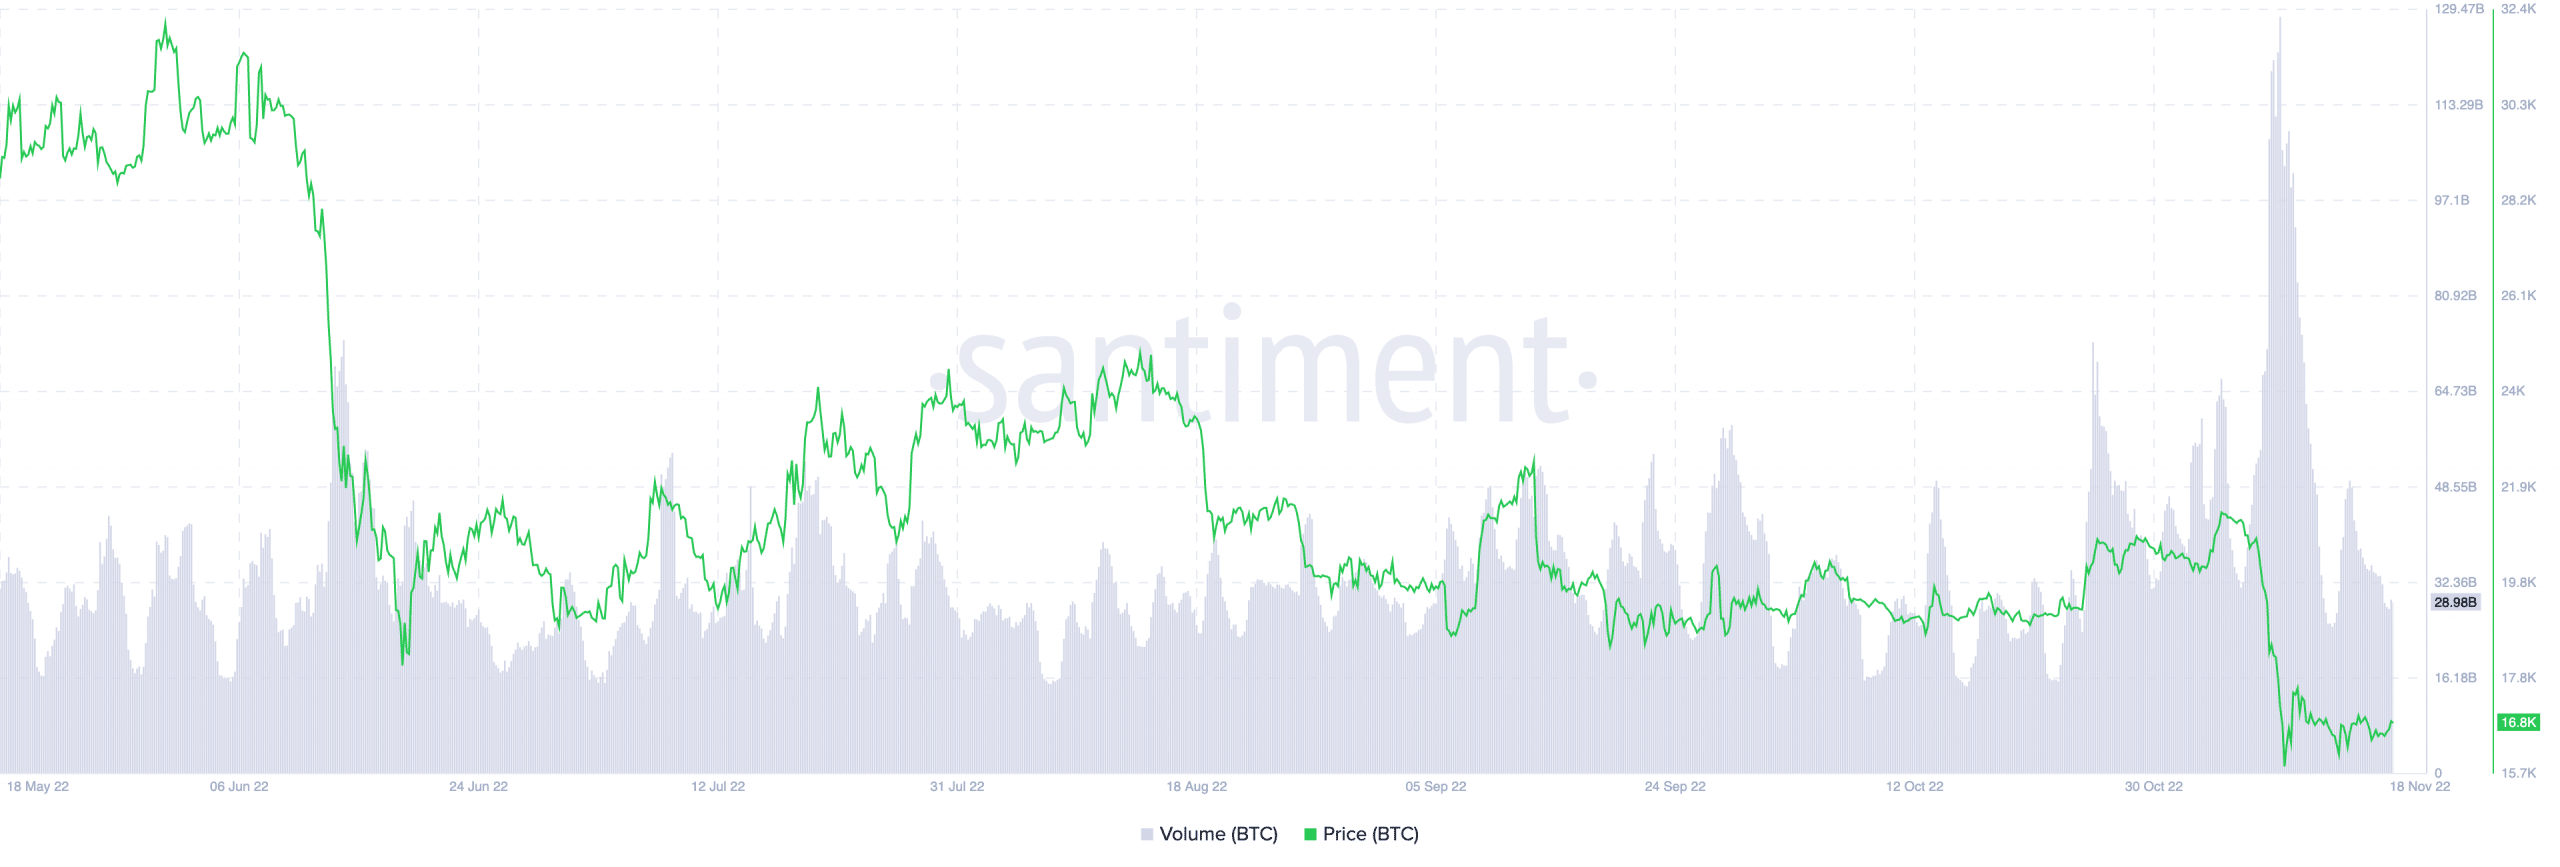 Gráfico de preço e volume de bitcoin